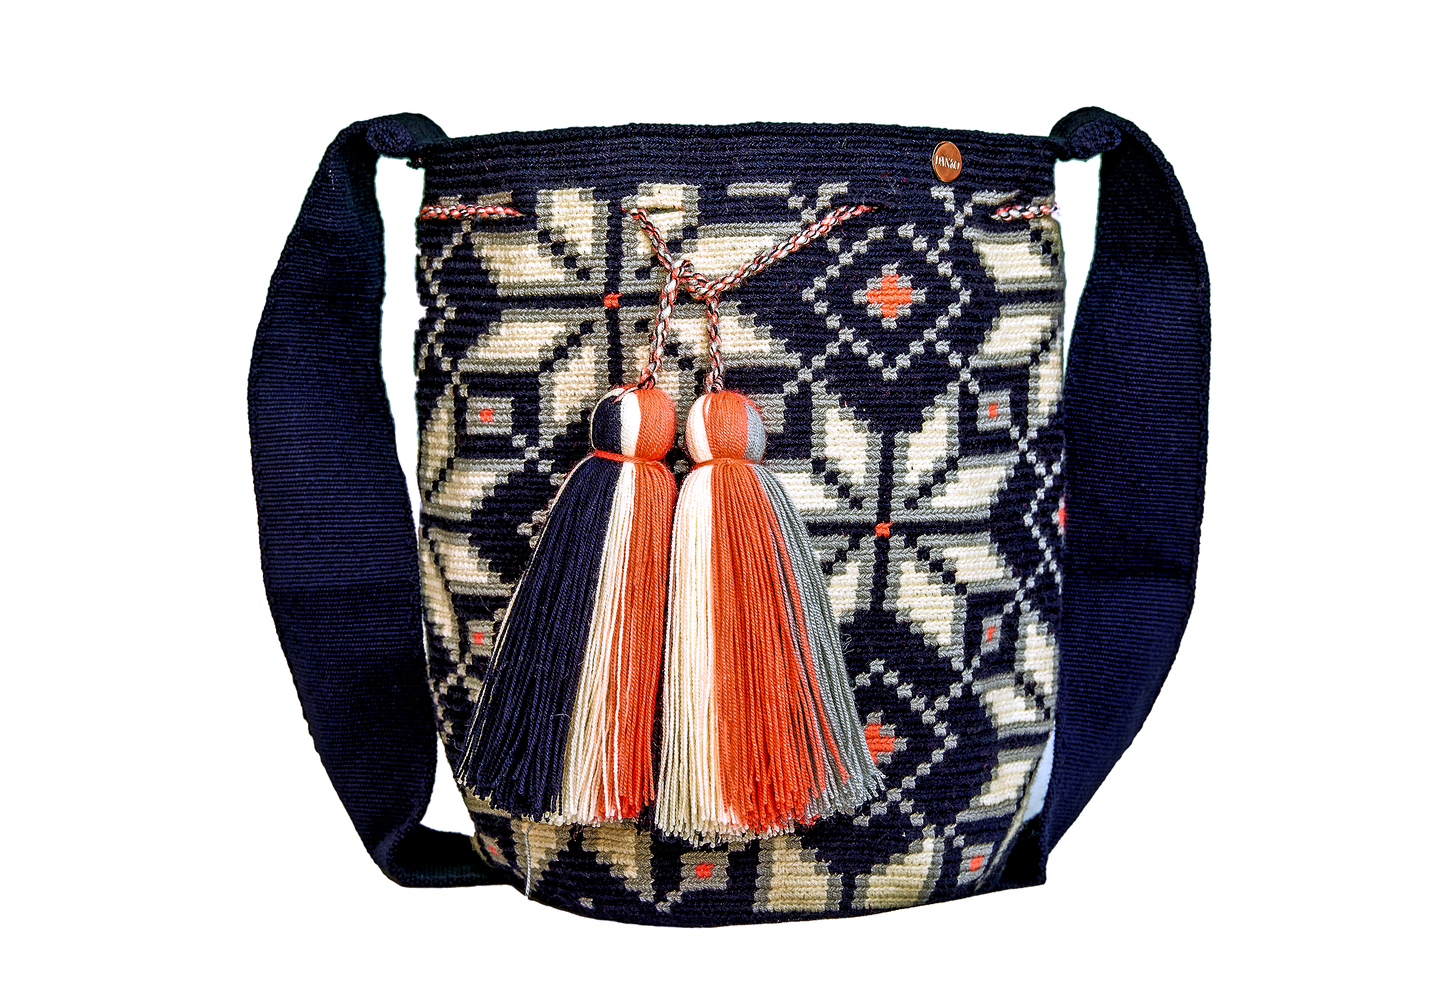 Handmade Navy Blue & White Patterned Crochet Handbag, with 2 tassels. 